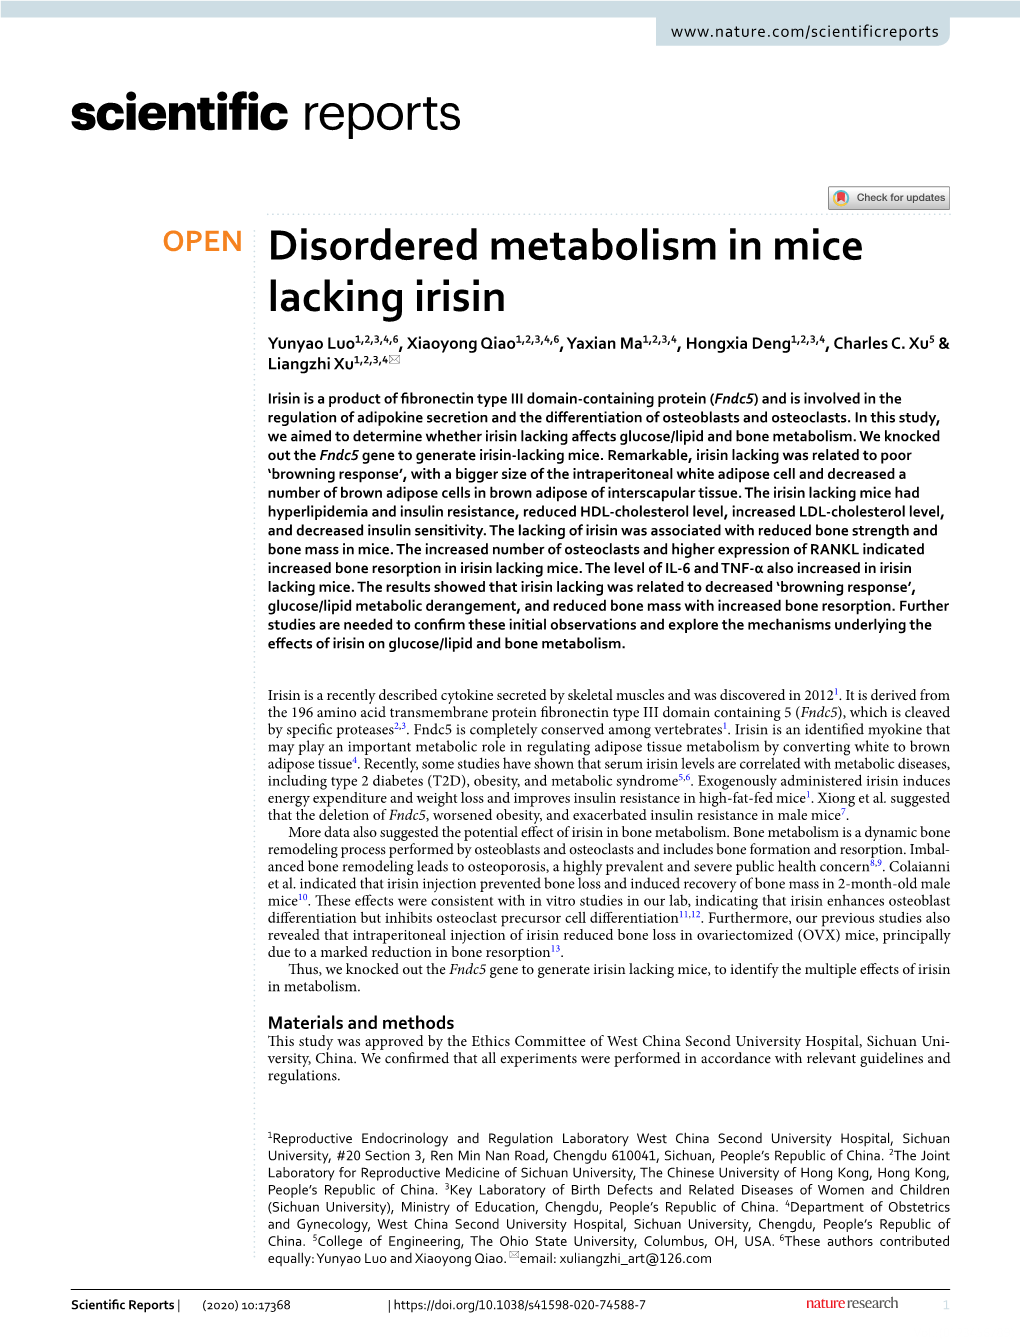 Disordered Metabolism in Mice Lacking Irisin Yunyao Luo1,2,3,4,6, Xiaoyong Qiao1,2,3,4,6, Yaxian Ma1,2,3,4, Hongxia Deng1,2,3,4, Charles C